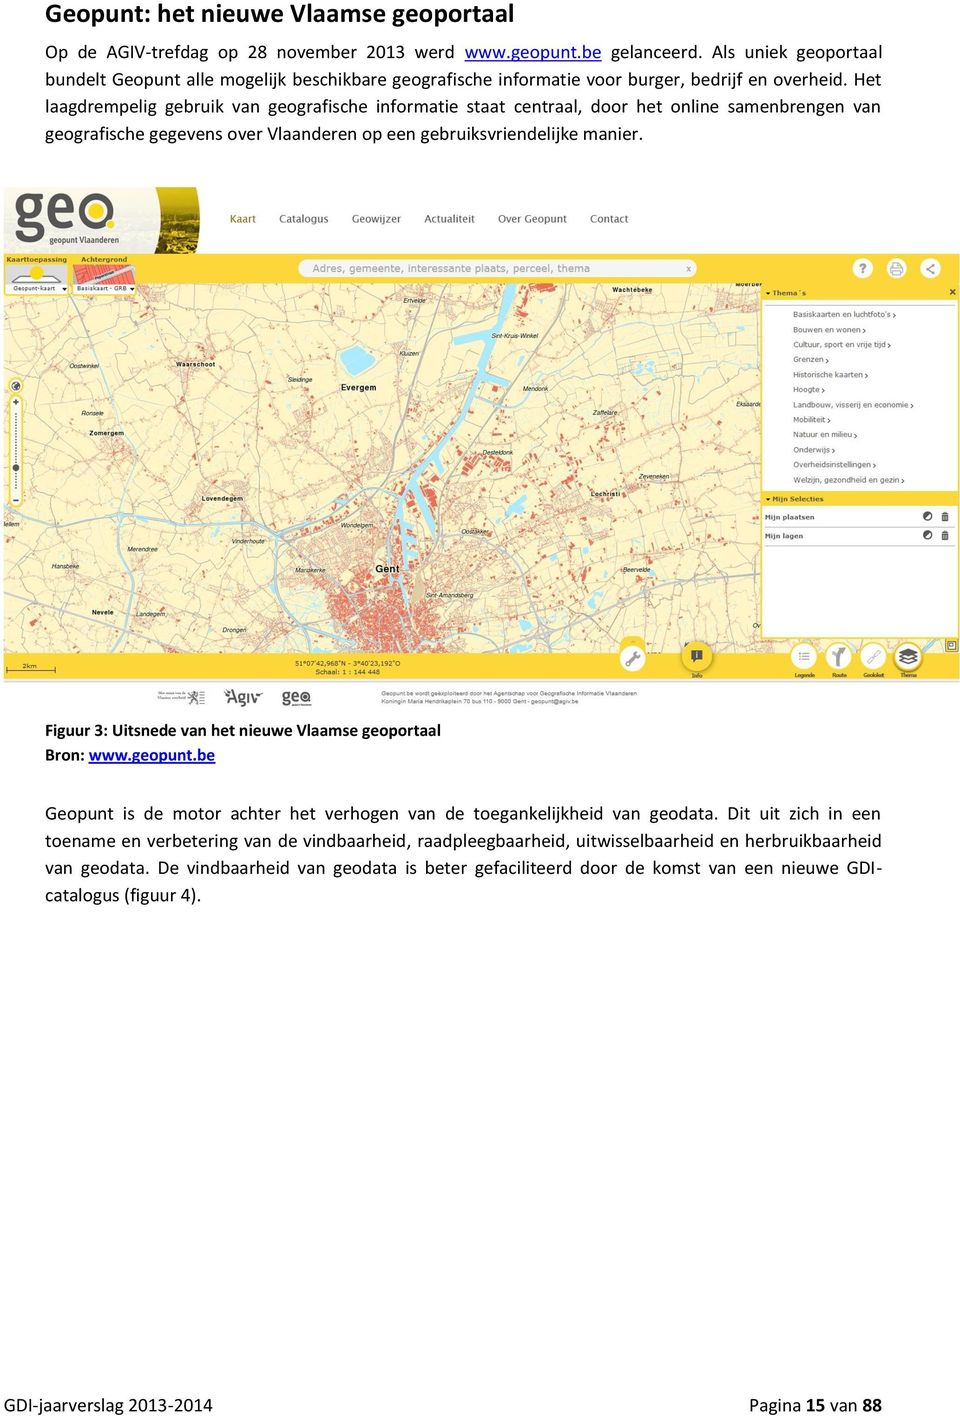 Het laagdrempelig gebruik van geografische informatie staat centraal, door het online samenbrengen van geografische gegevens over Vlaanderen op een gebruiksvriendelijke manier.